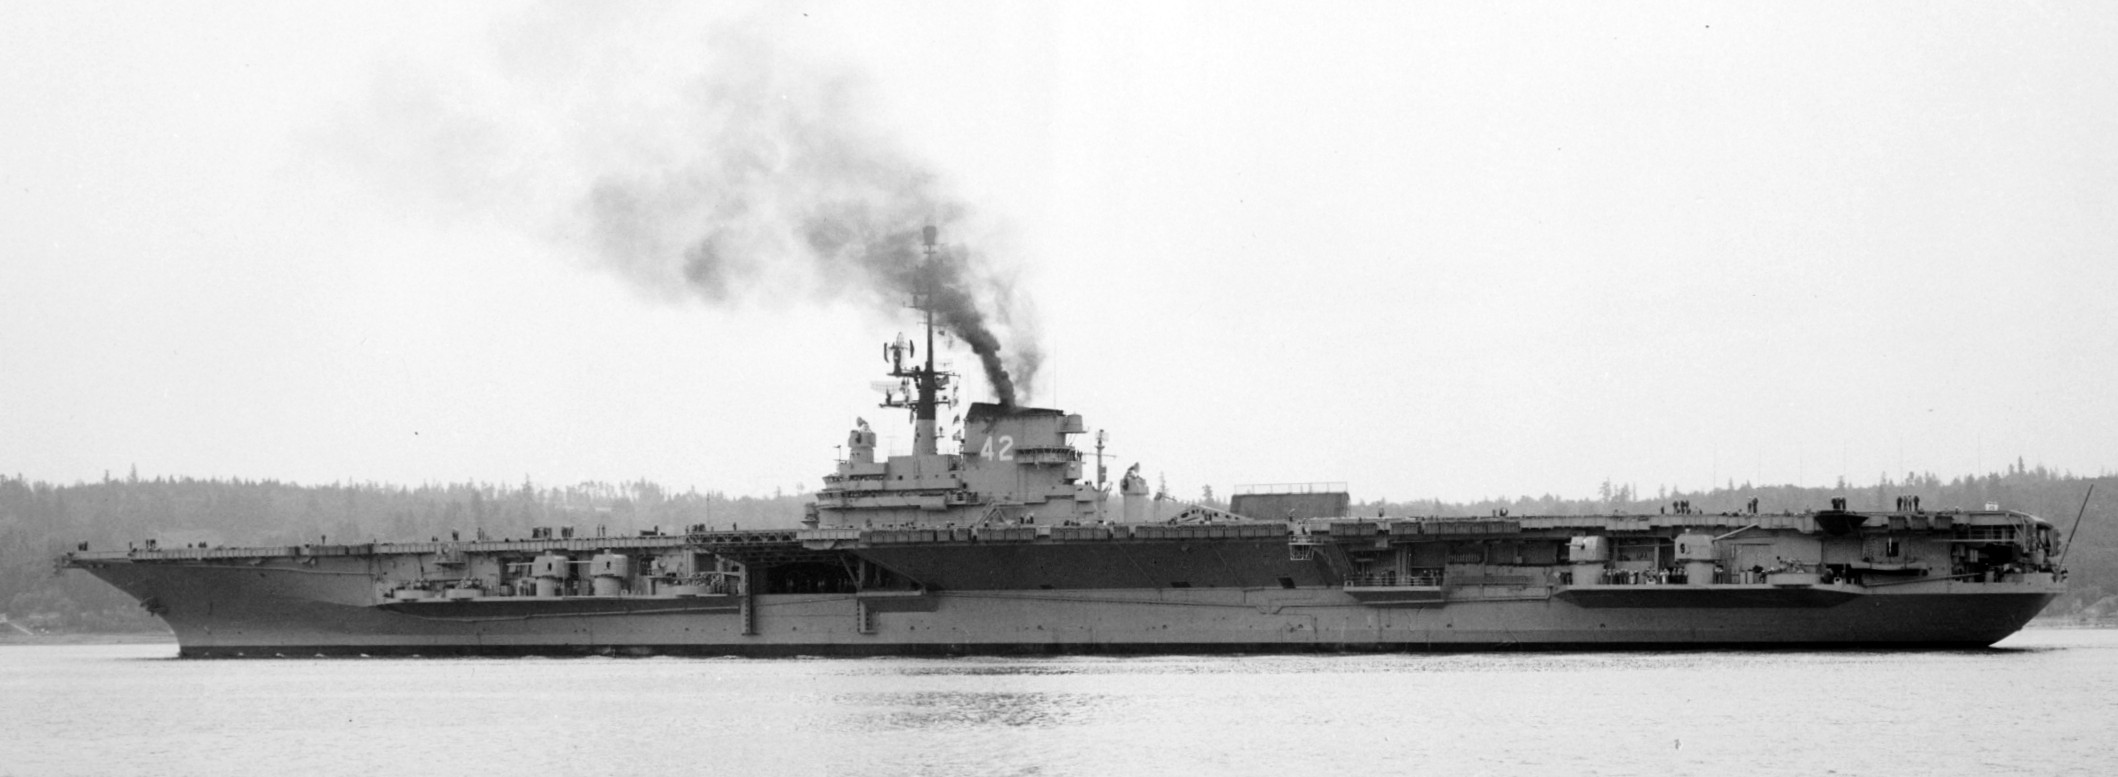 cva-42 uss franklin d. roosevelt midway class aircraft carrier 48 puget sound naval shipyard washington